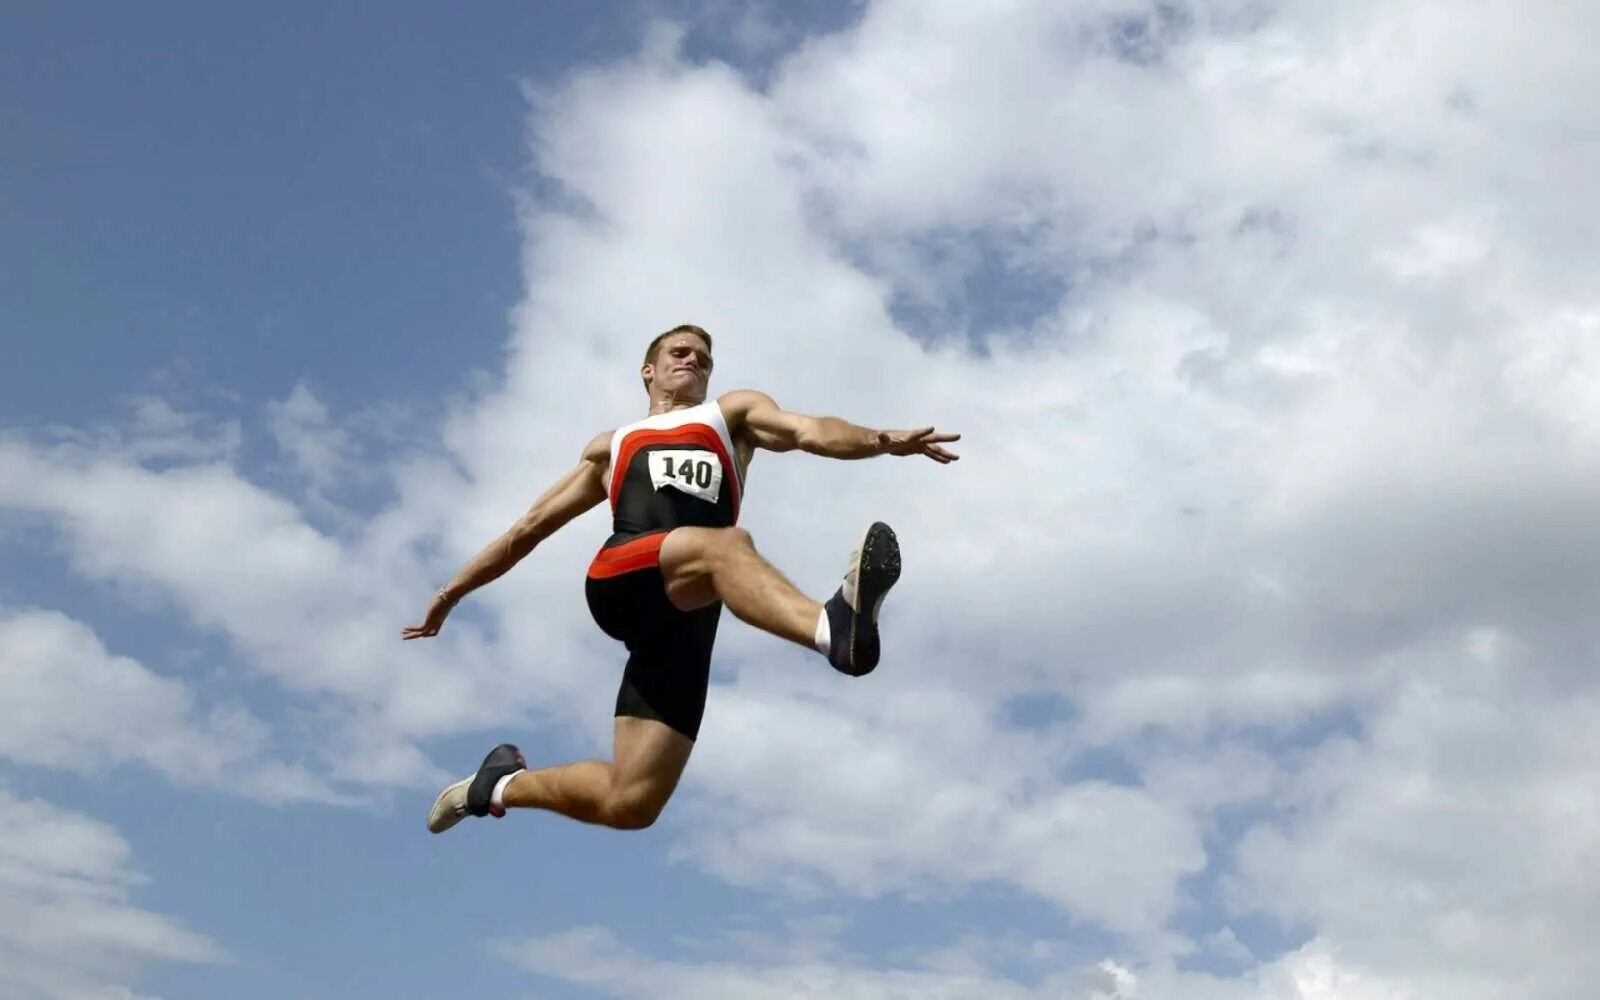 First jump. Лёгкая атлетика прыжки в высоту с разбега. В прыжке. Спортсмен прыгает. Человек в прыжке.